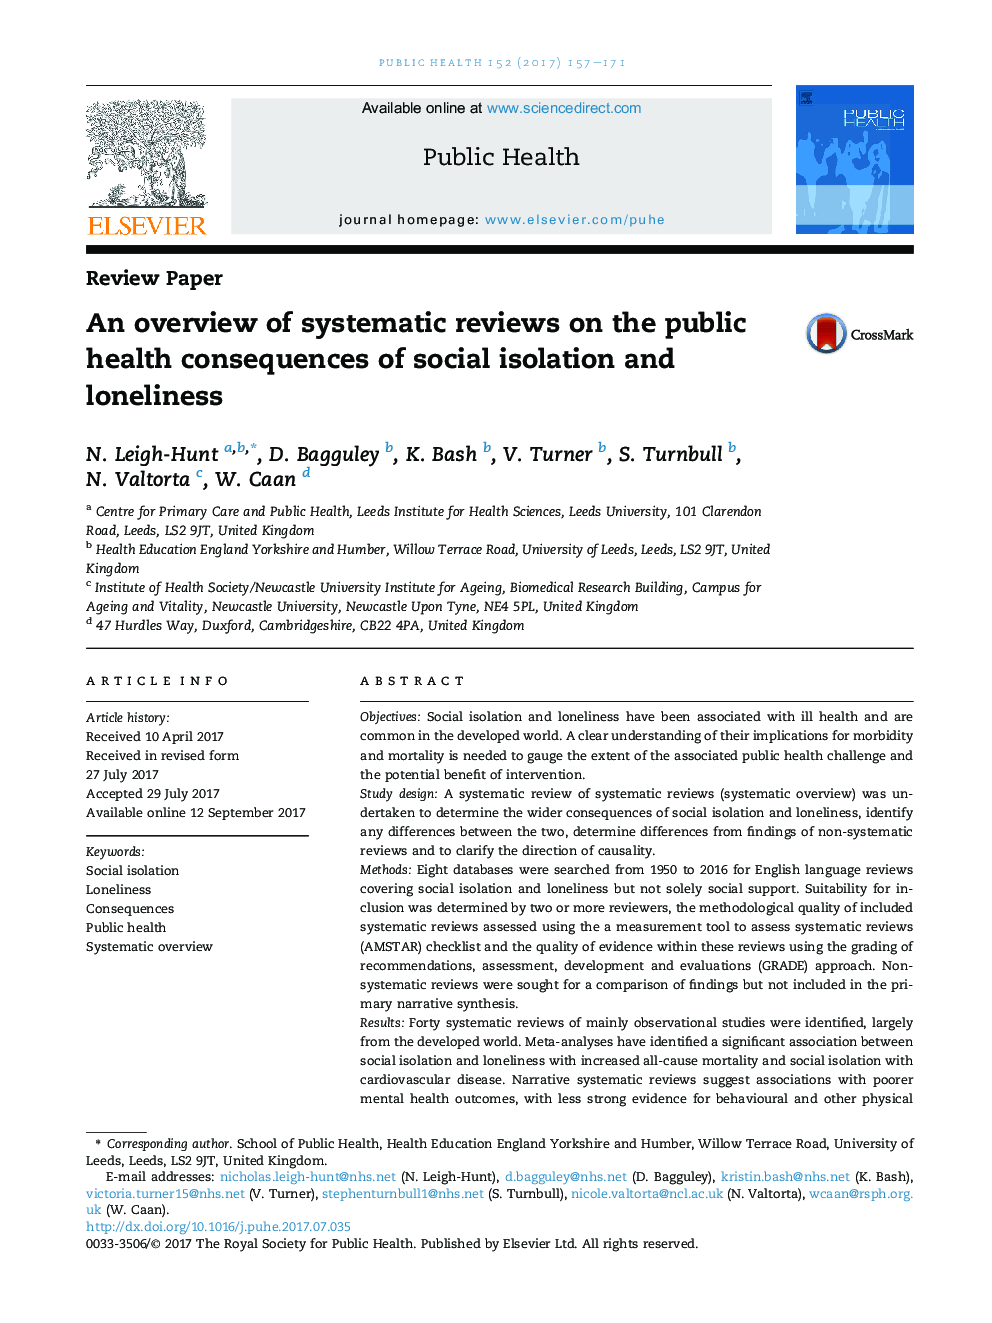 یک مرور کلی از بررسی سیستماتیک بر پیامدهای بهداشت عمومی انزوای اجتماعی و تنهایی 